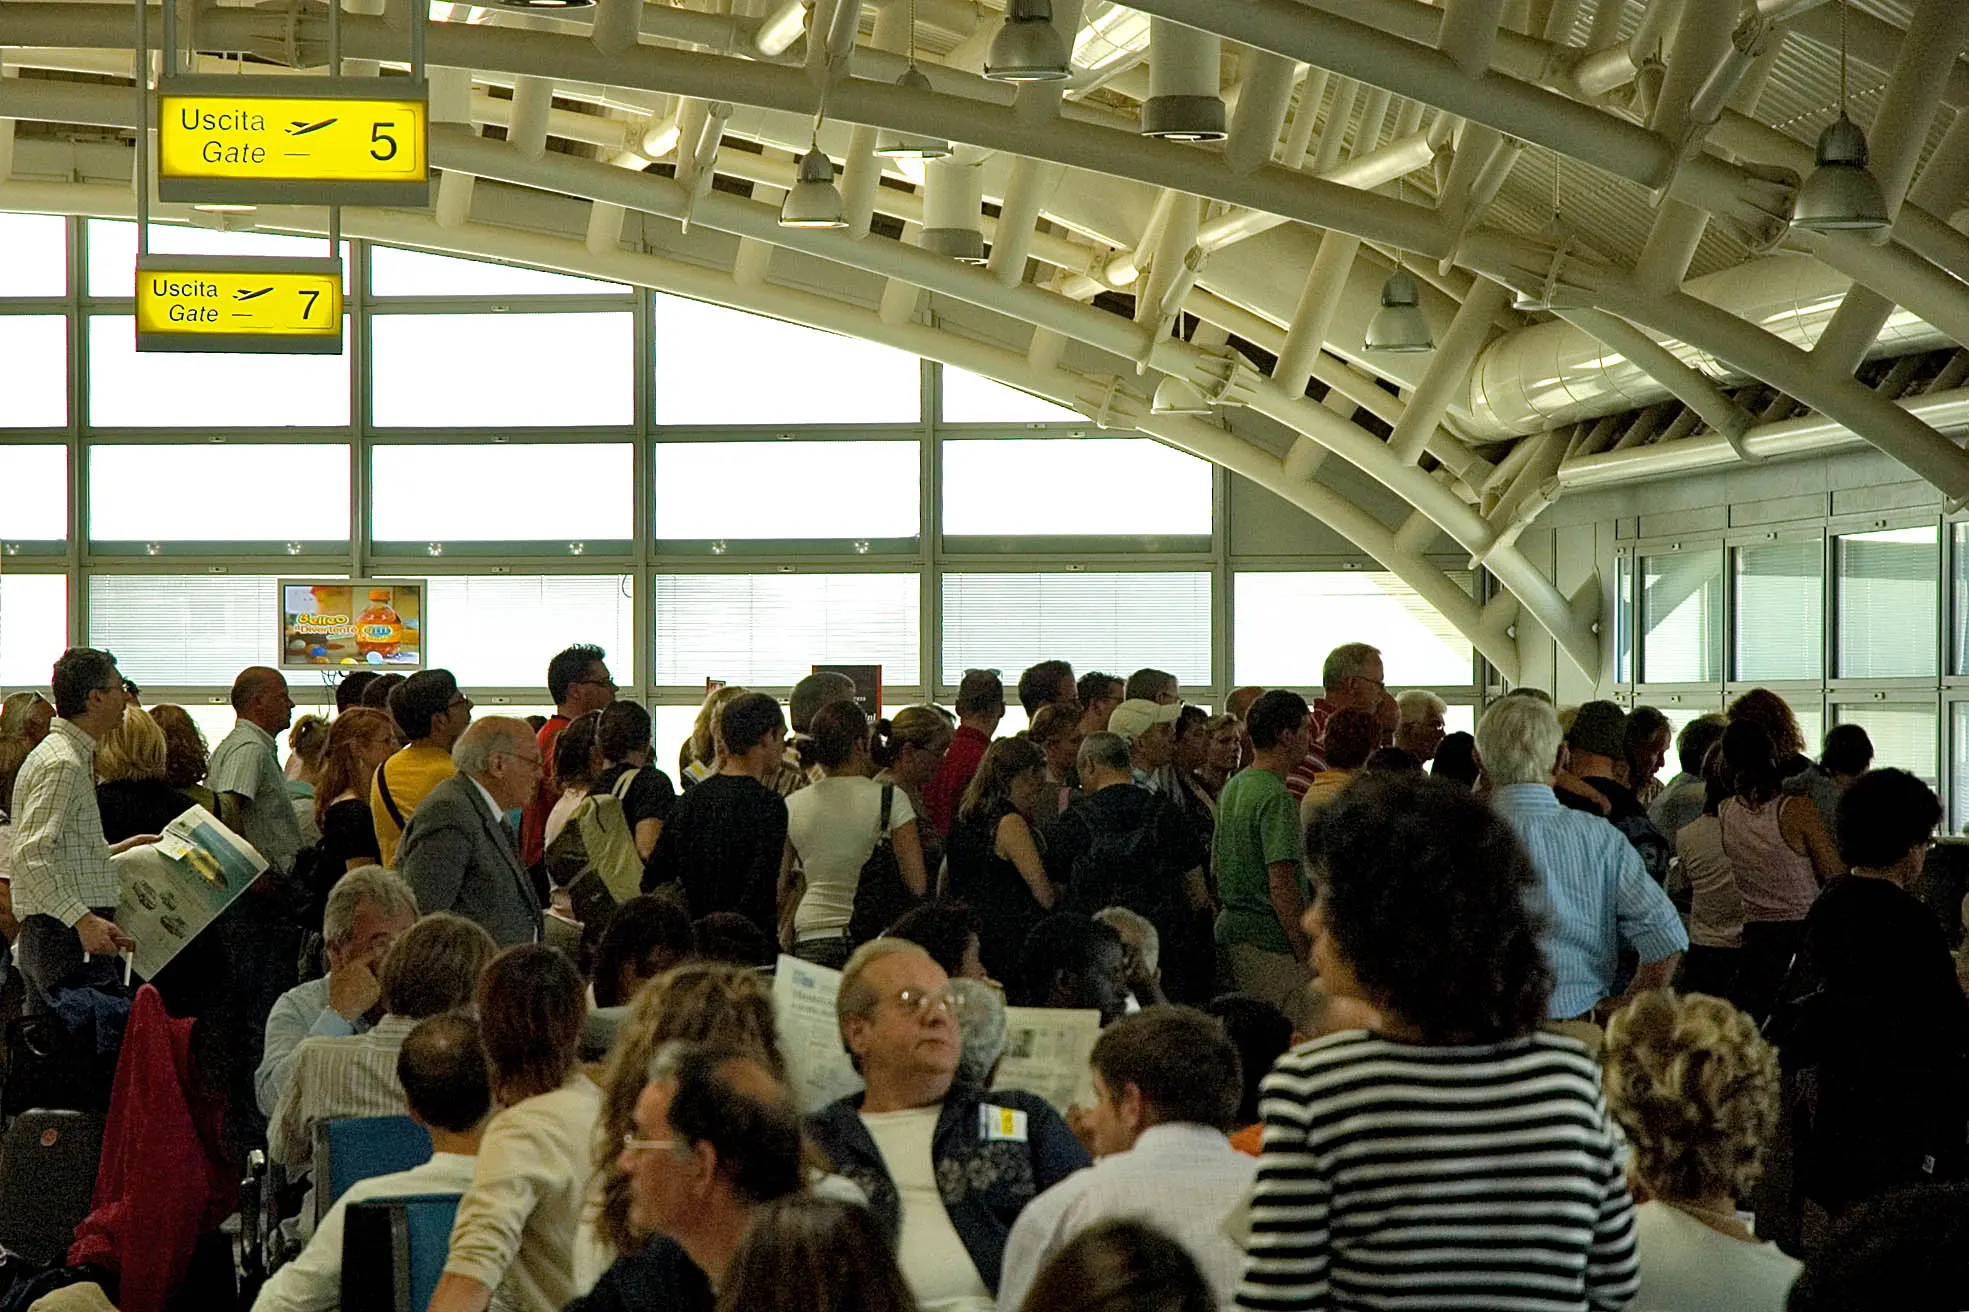 Passeggeri in attesa nella sala partenze dell'aeroporto di Cagliari-Elmas (archivio)